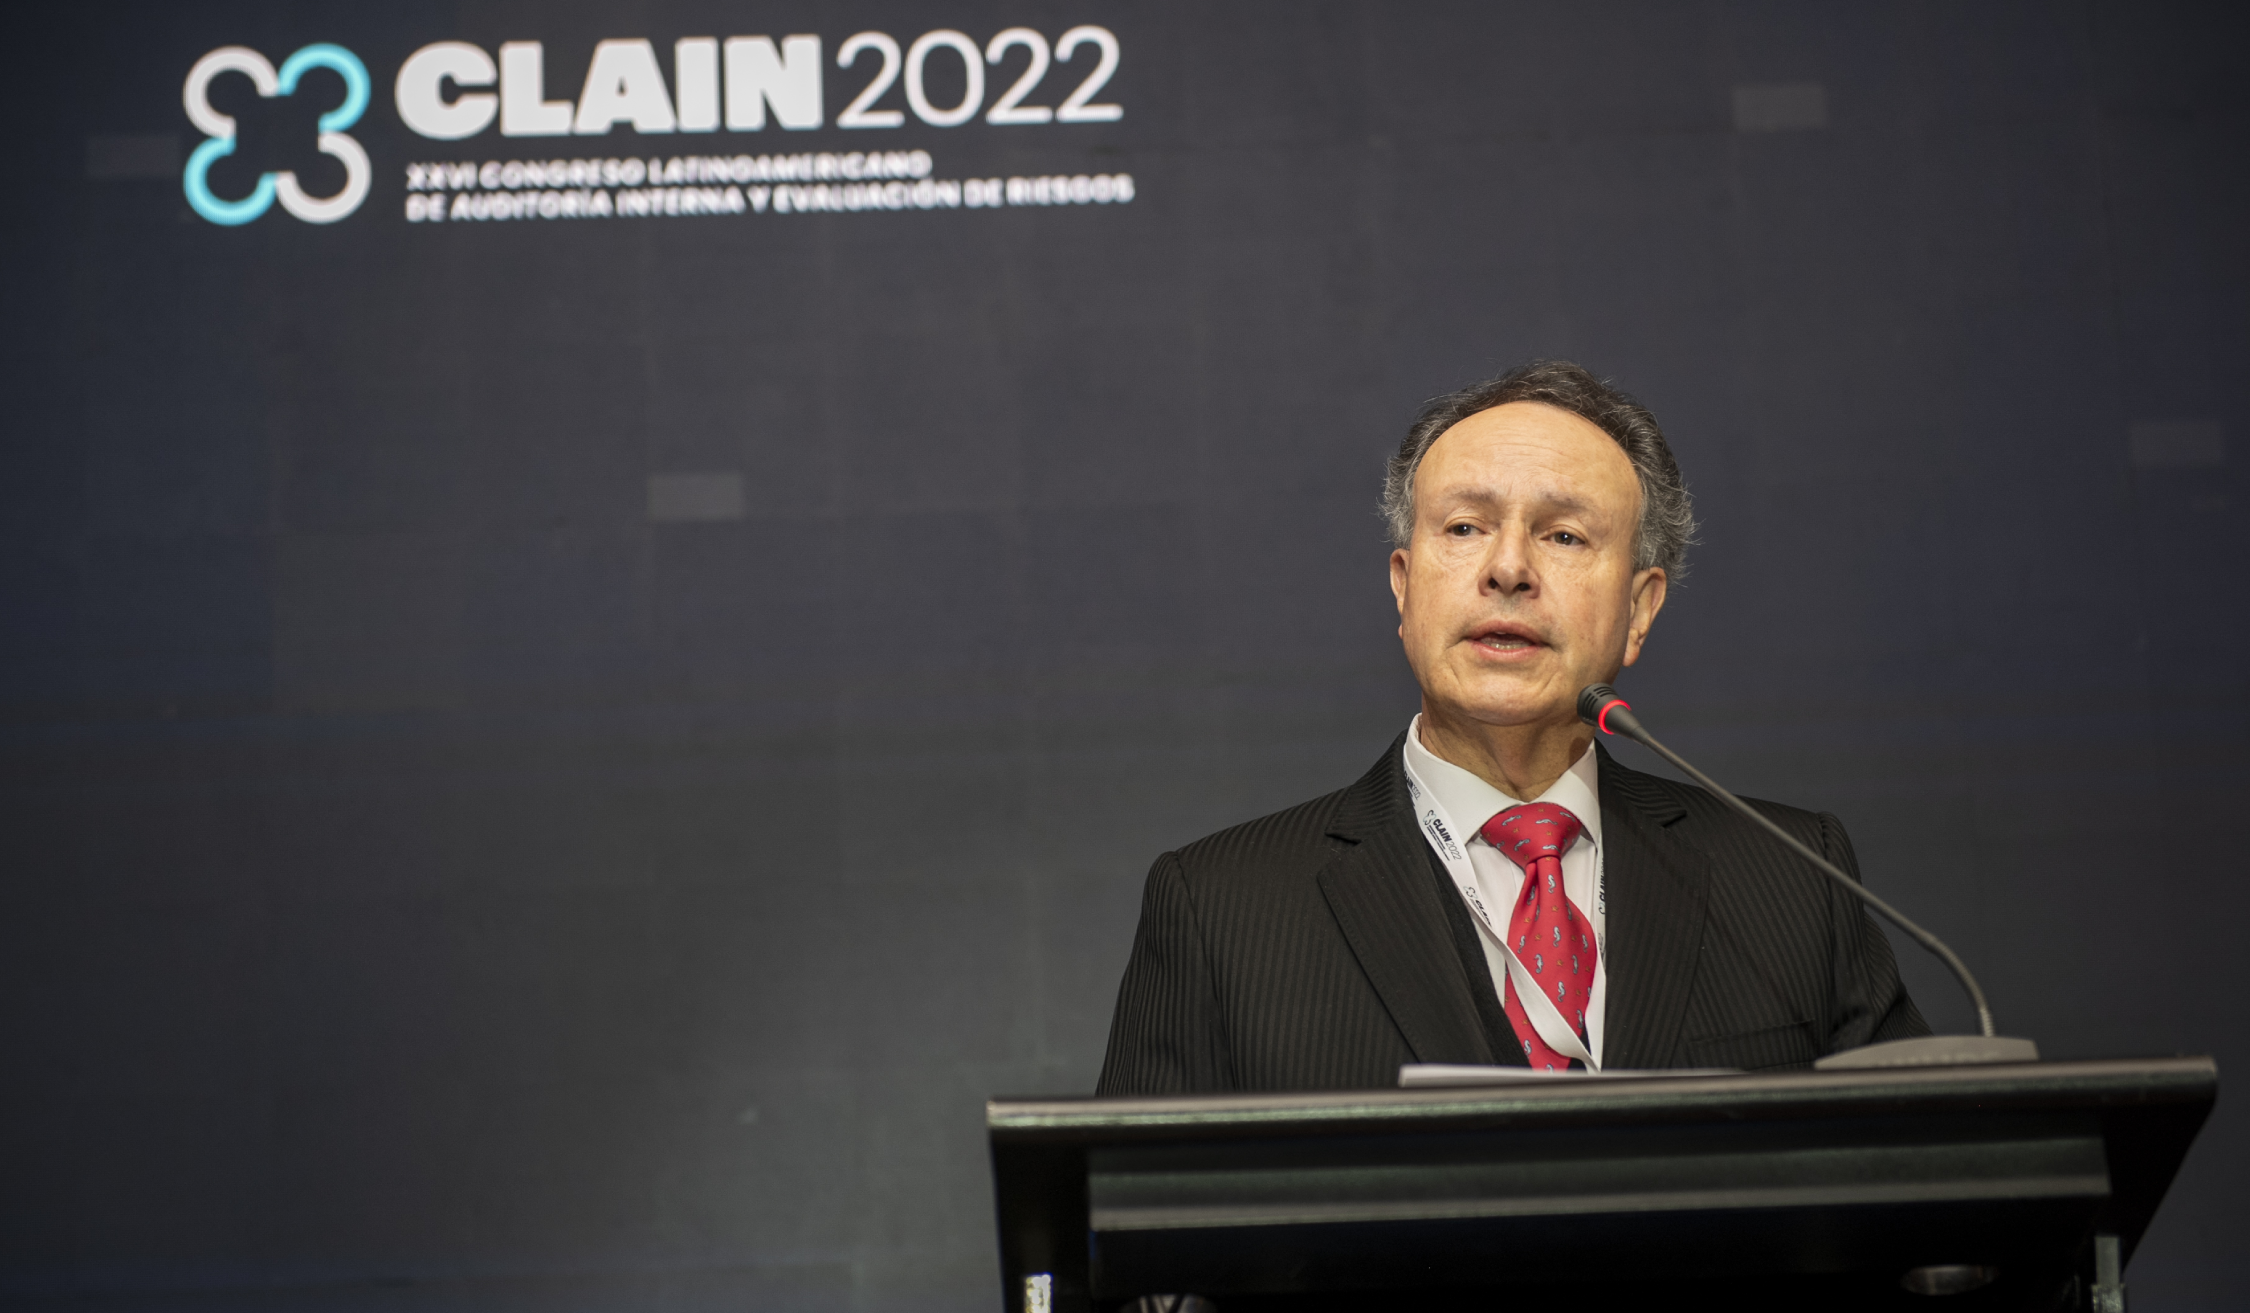 Congreso Latinoamericano de Auditoría Interna y Evaluación de Riesgos 2022